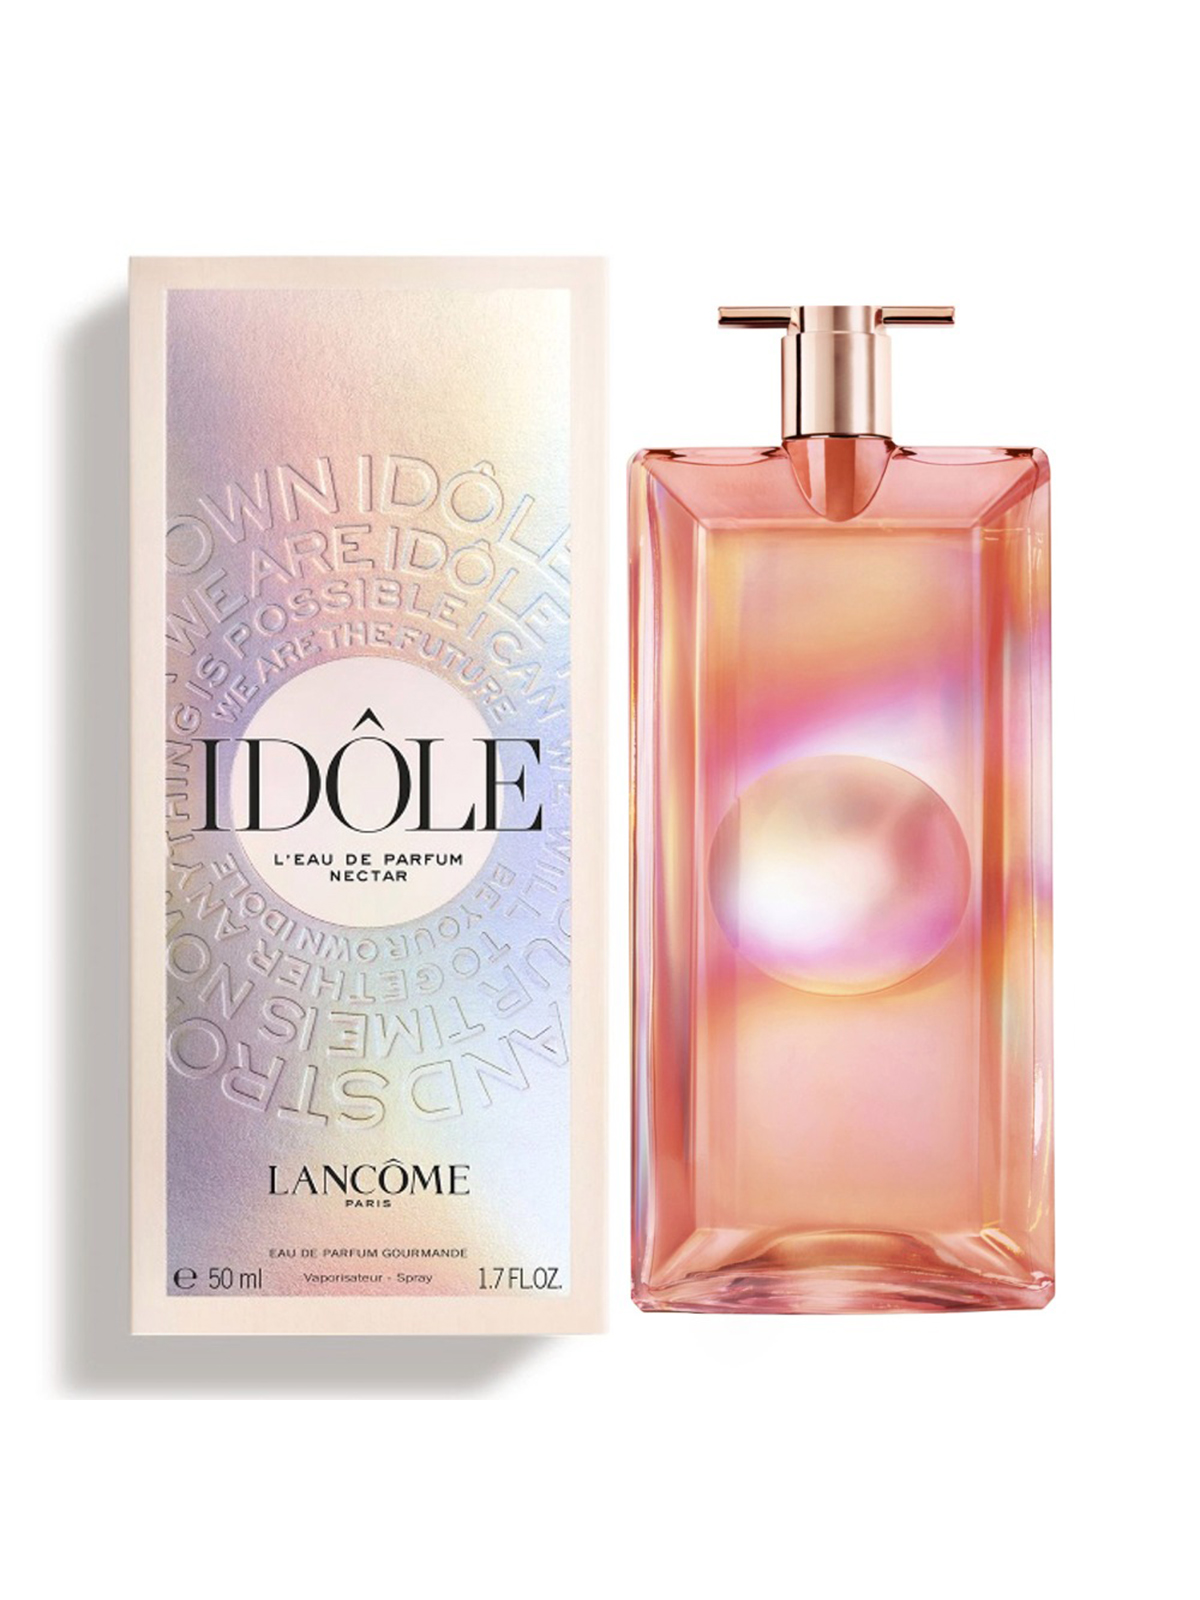 Lancome Idole L'eau De Parfum Nectar EDP 50ml